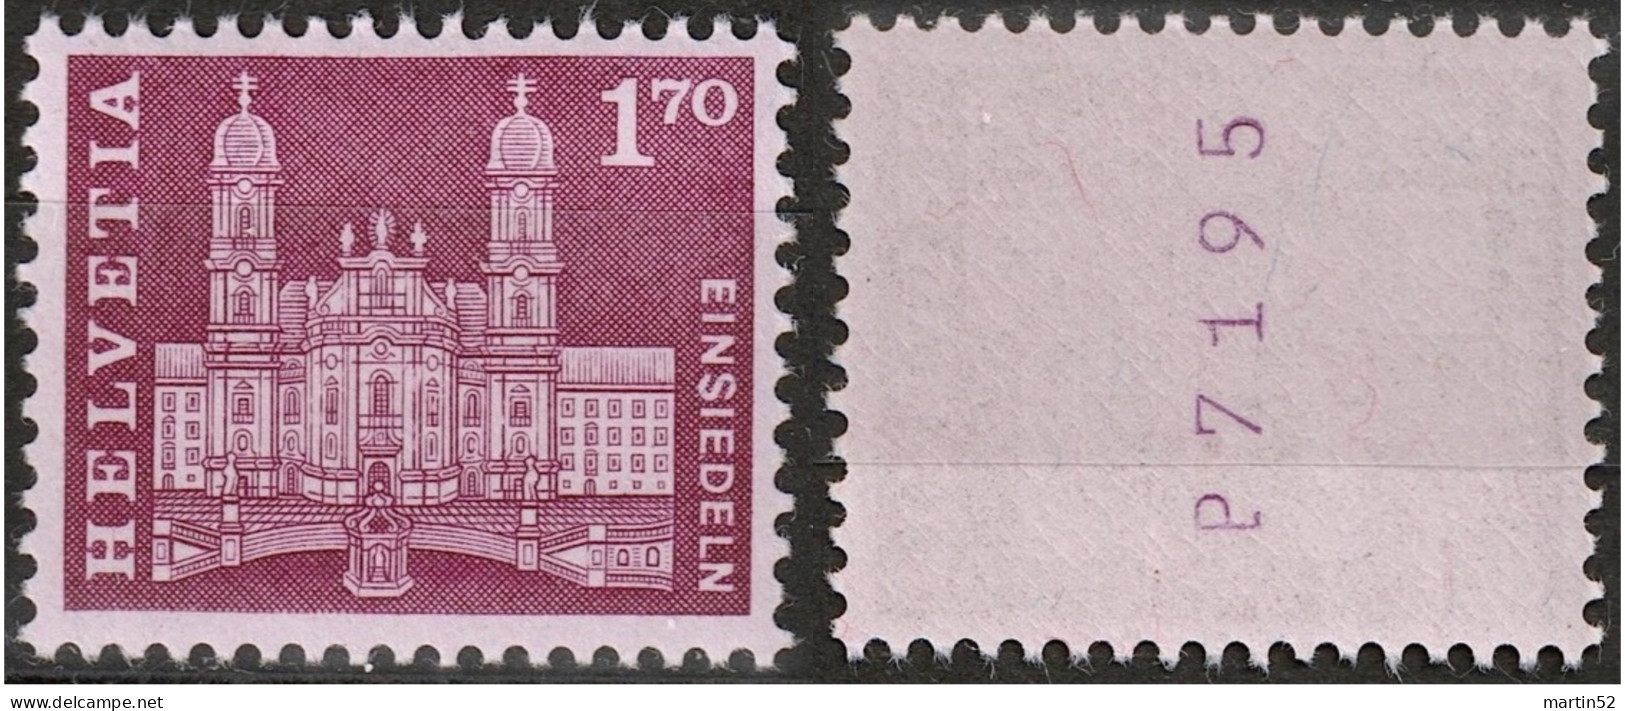 Schweiz Suisse 1963: ROLLEN MIT NUMMER 7195 AVEC N° Zu 392RM.01 / Mi 765R ** Postfrisch MNH (Zumstein CHF 10.00) - Coil Stamps